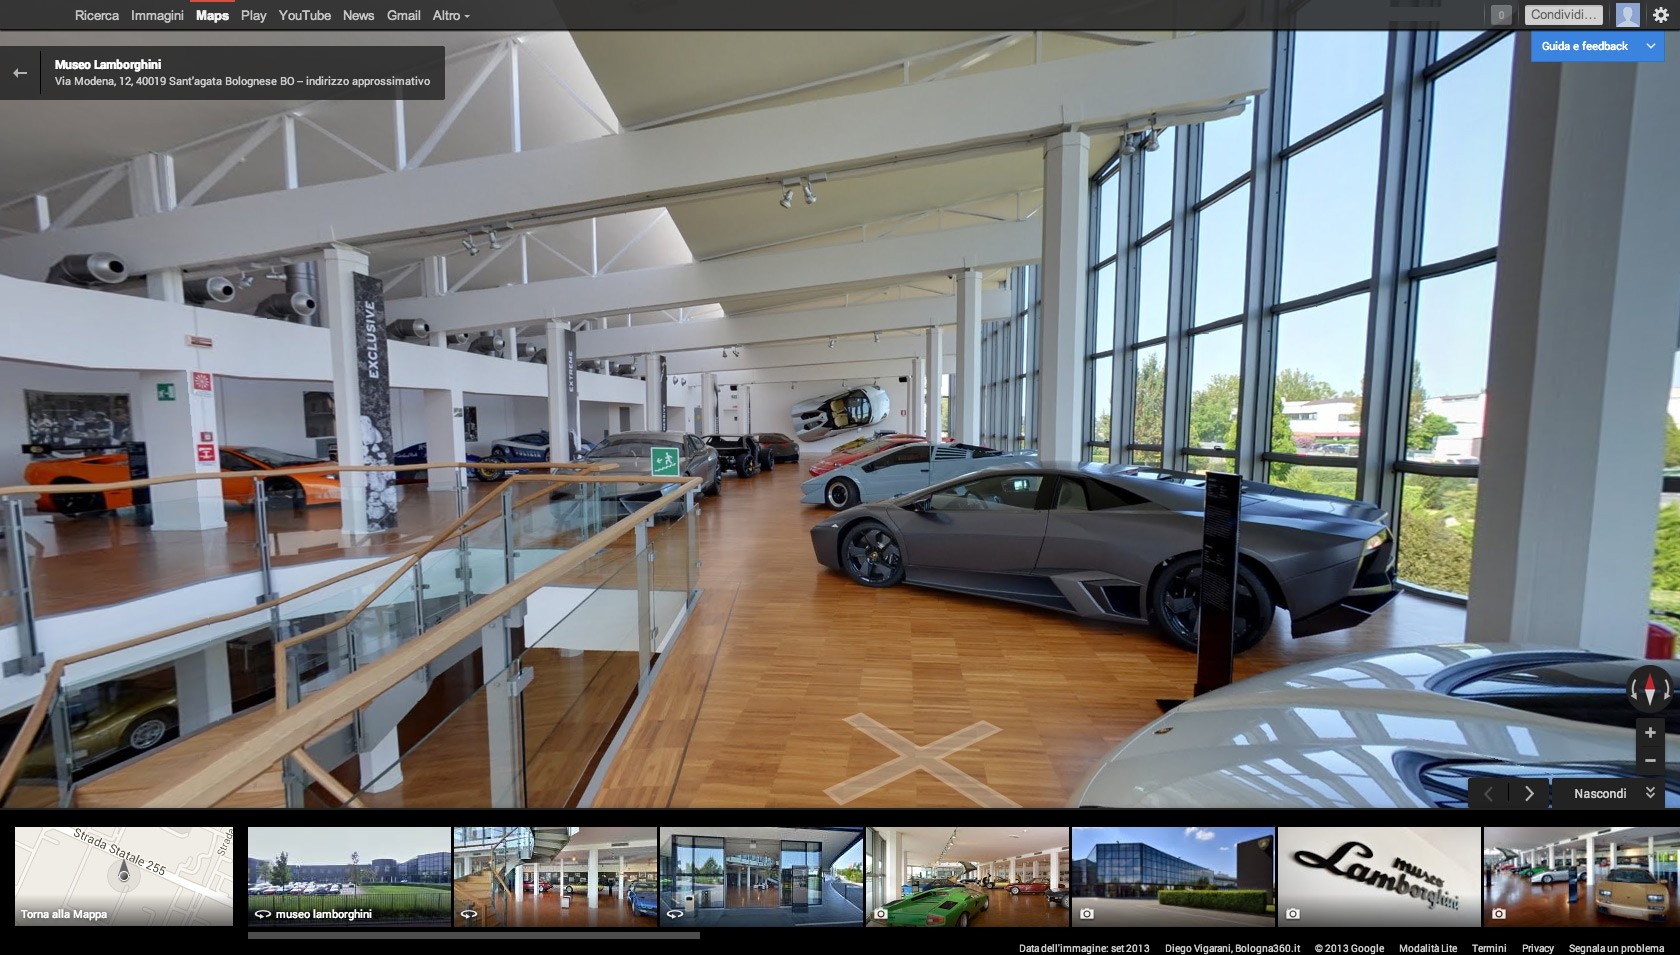 Automobili Lamborghini Launches Exclusive Museum Indoor View On Google Maps